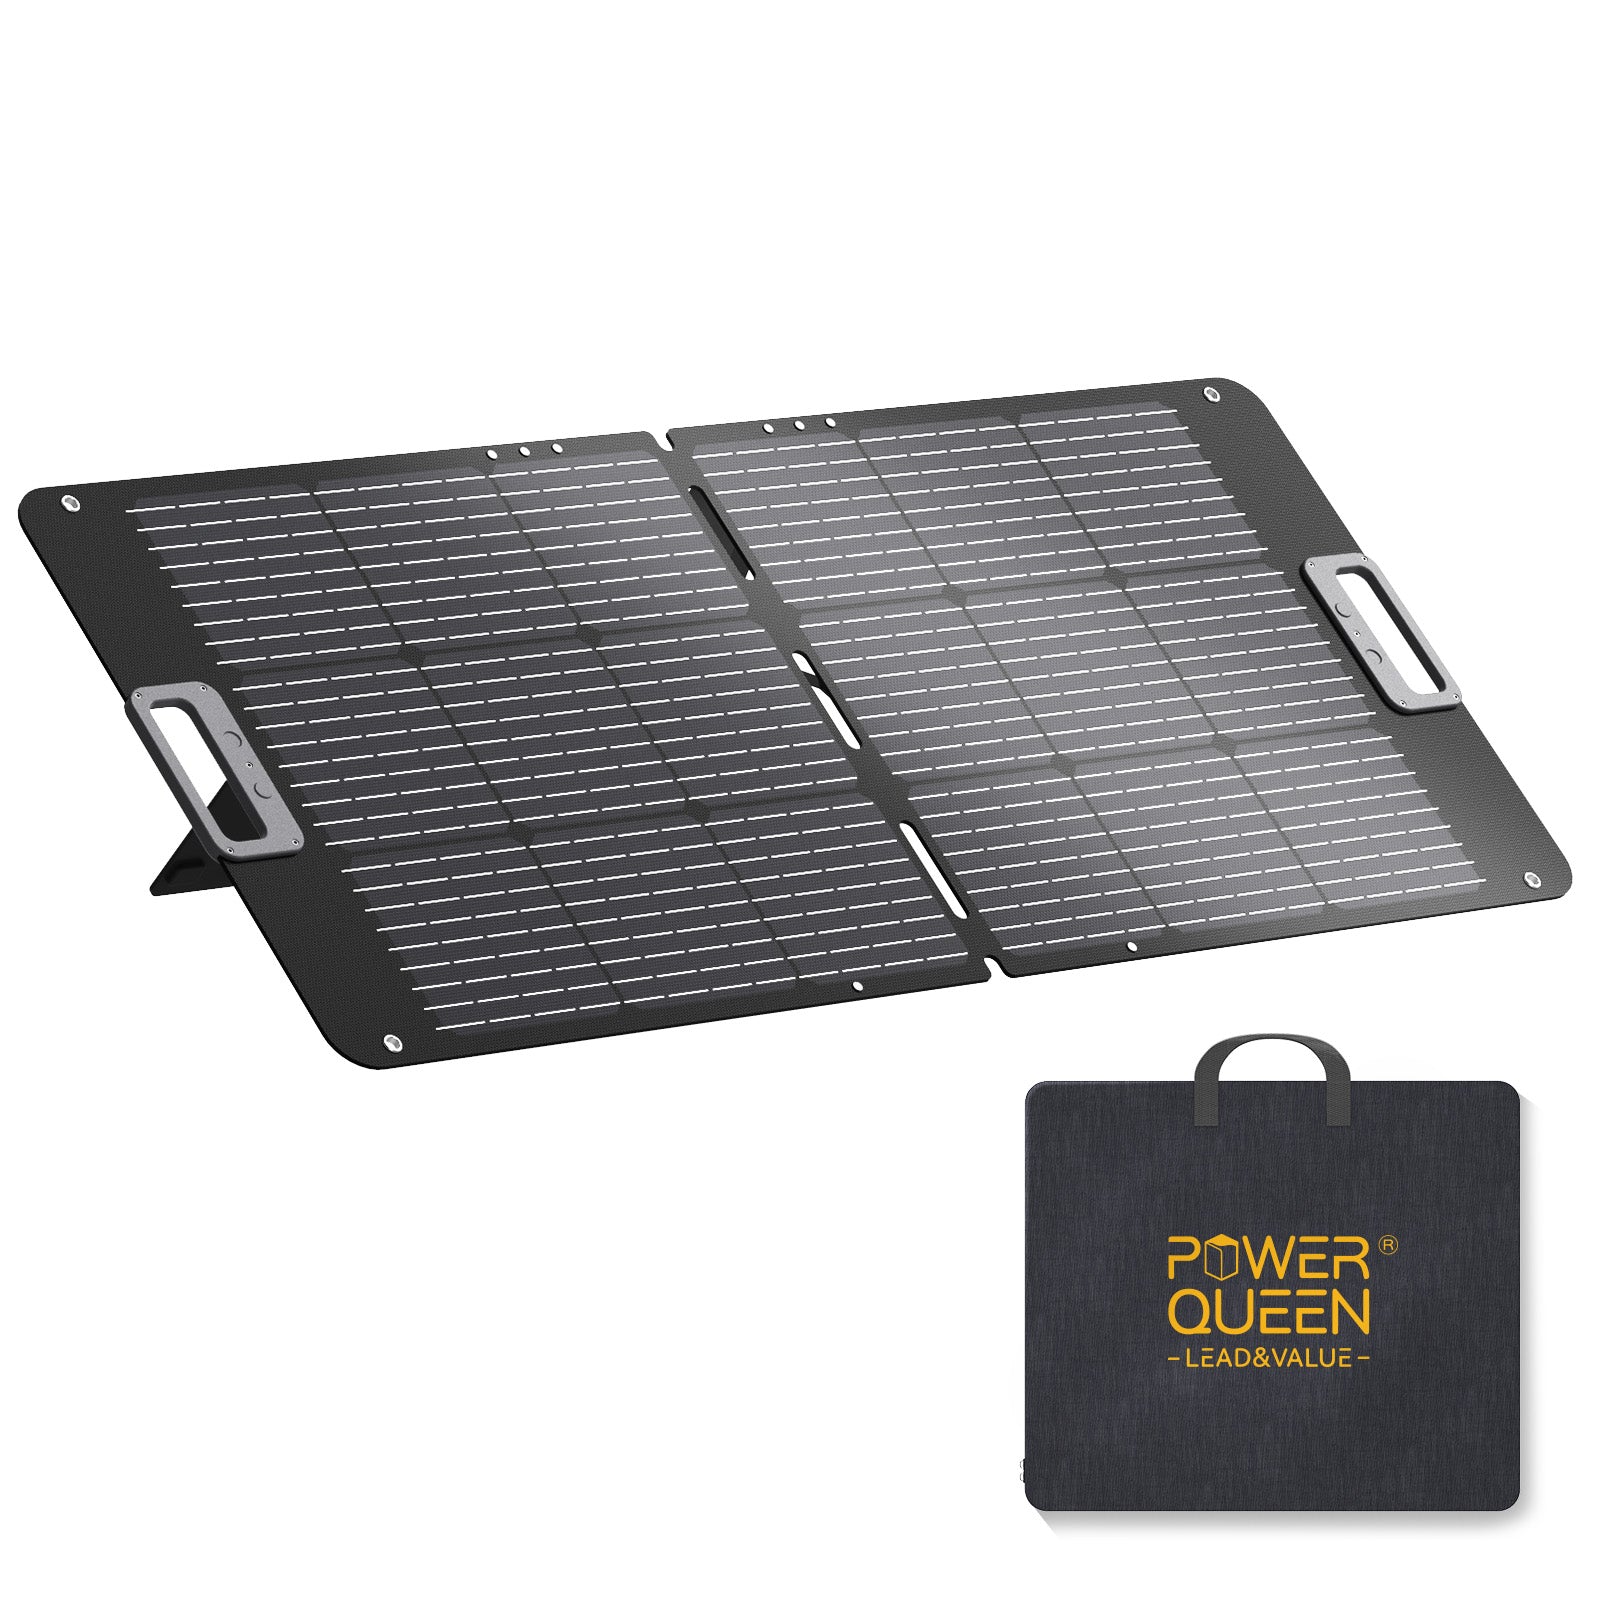 Pannello solare portatile Power Queen da 100 W per giardini, balconi, camper, campeggio